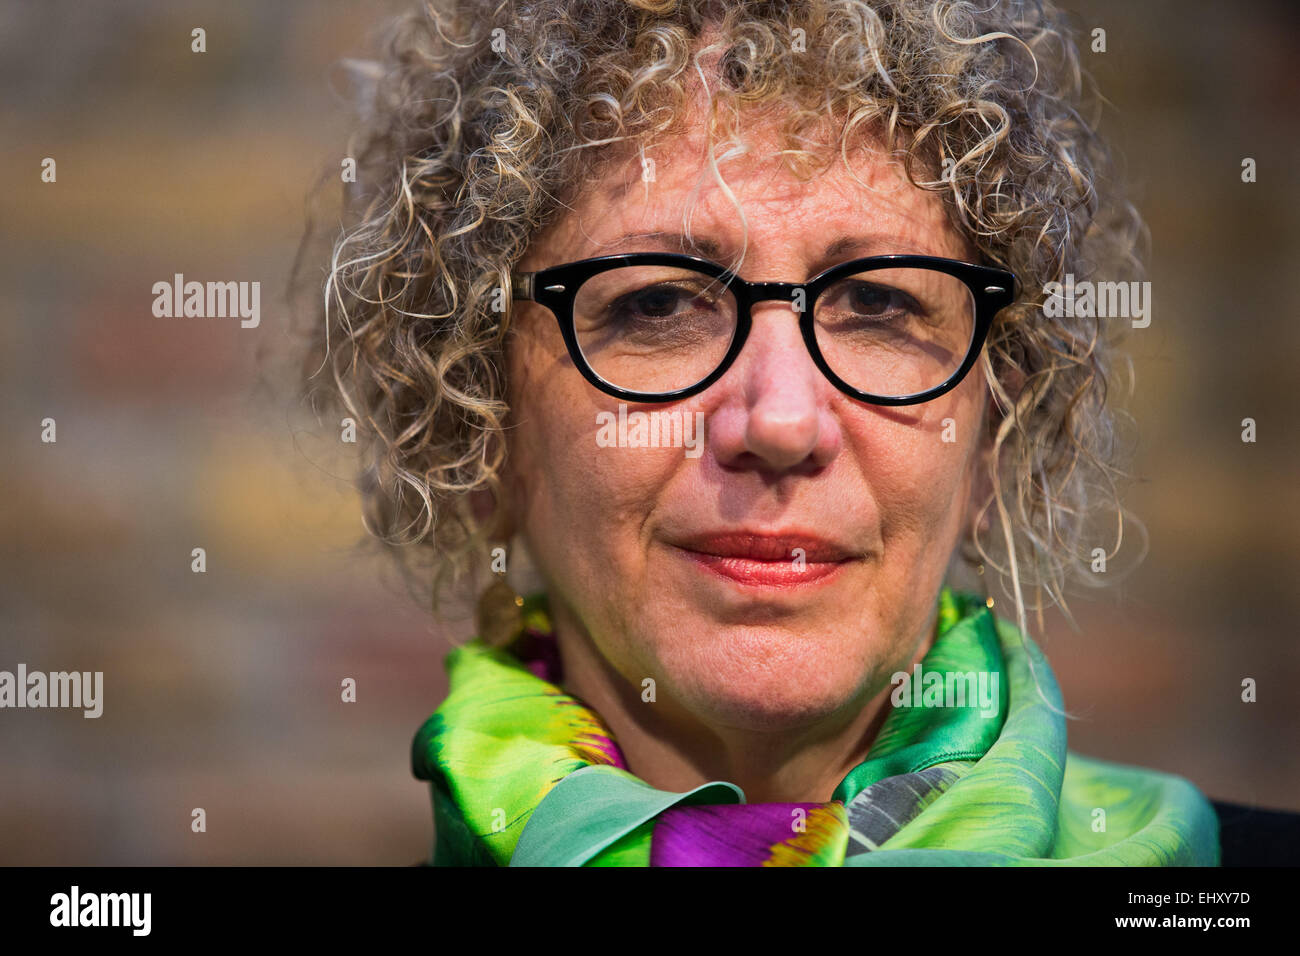 Colonia, Germania. Xviii Mar, 2015. Autore israeliana Lizzie Doron pone per le foto al festival letterario Lit.Cologne a Colonia, in Germania, il 18 marzo 2015. Il Lit.Cologne si svolgerà dal 11 al 21 marzo. Foto: ROLF VENNENBERND/dpa/Alamy Live News Foto Stock